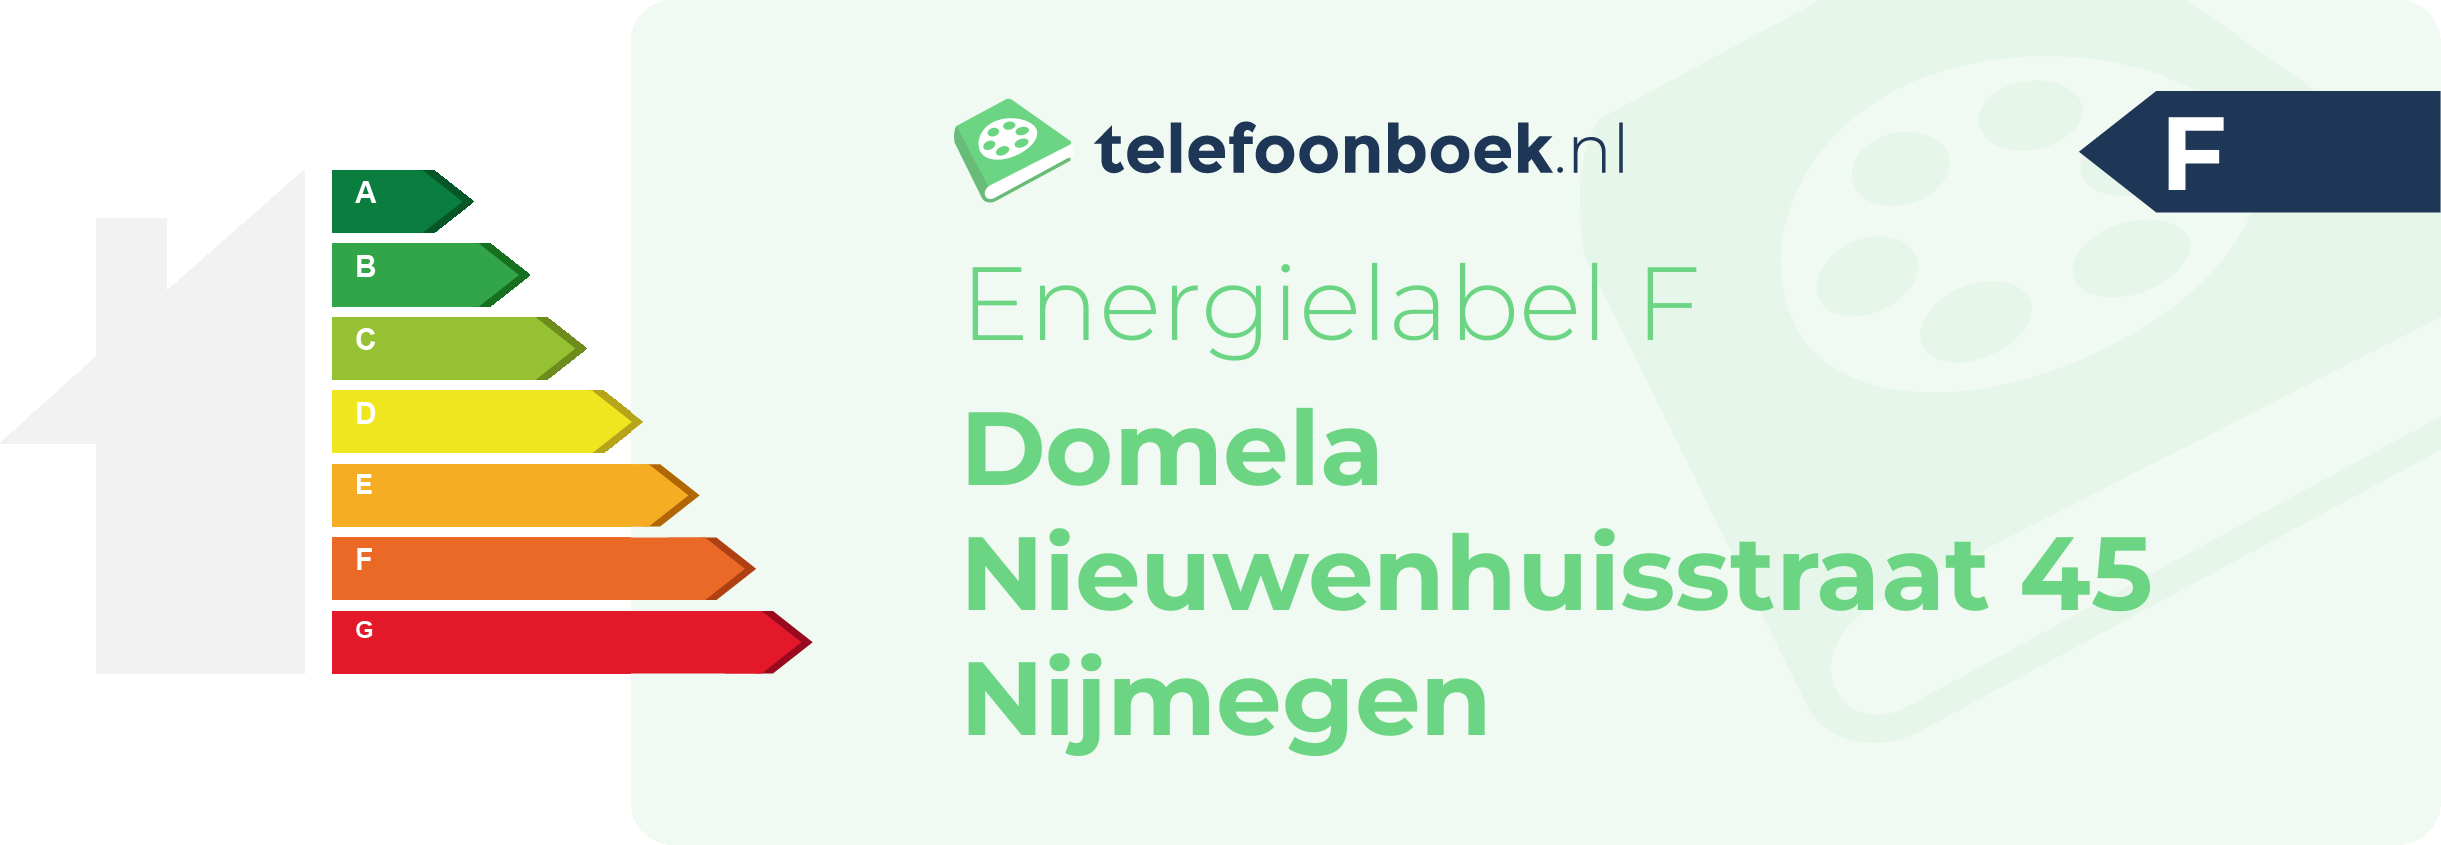 Energielabel Domela Nieuwenhuisstraat 45 Nijmegen